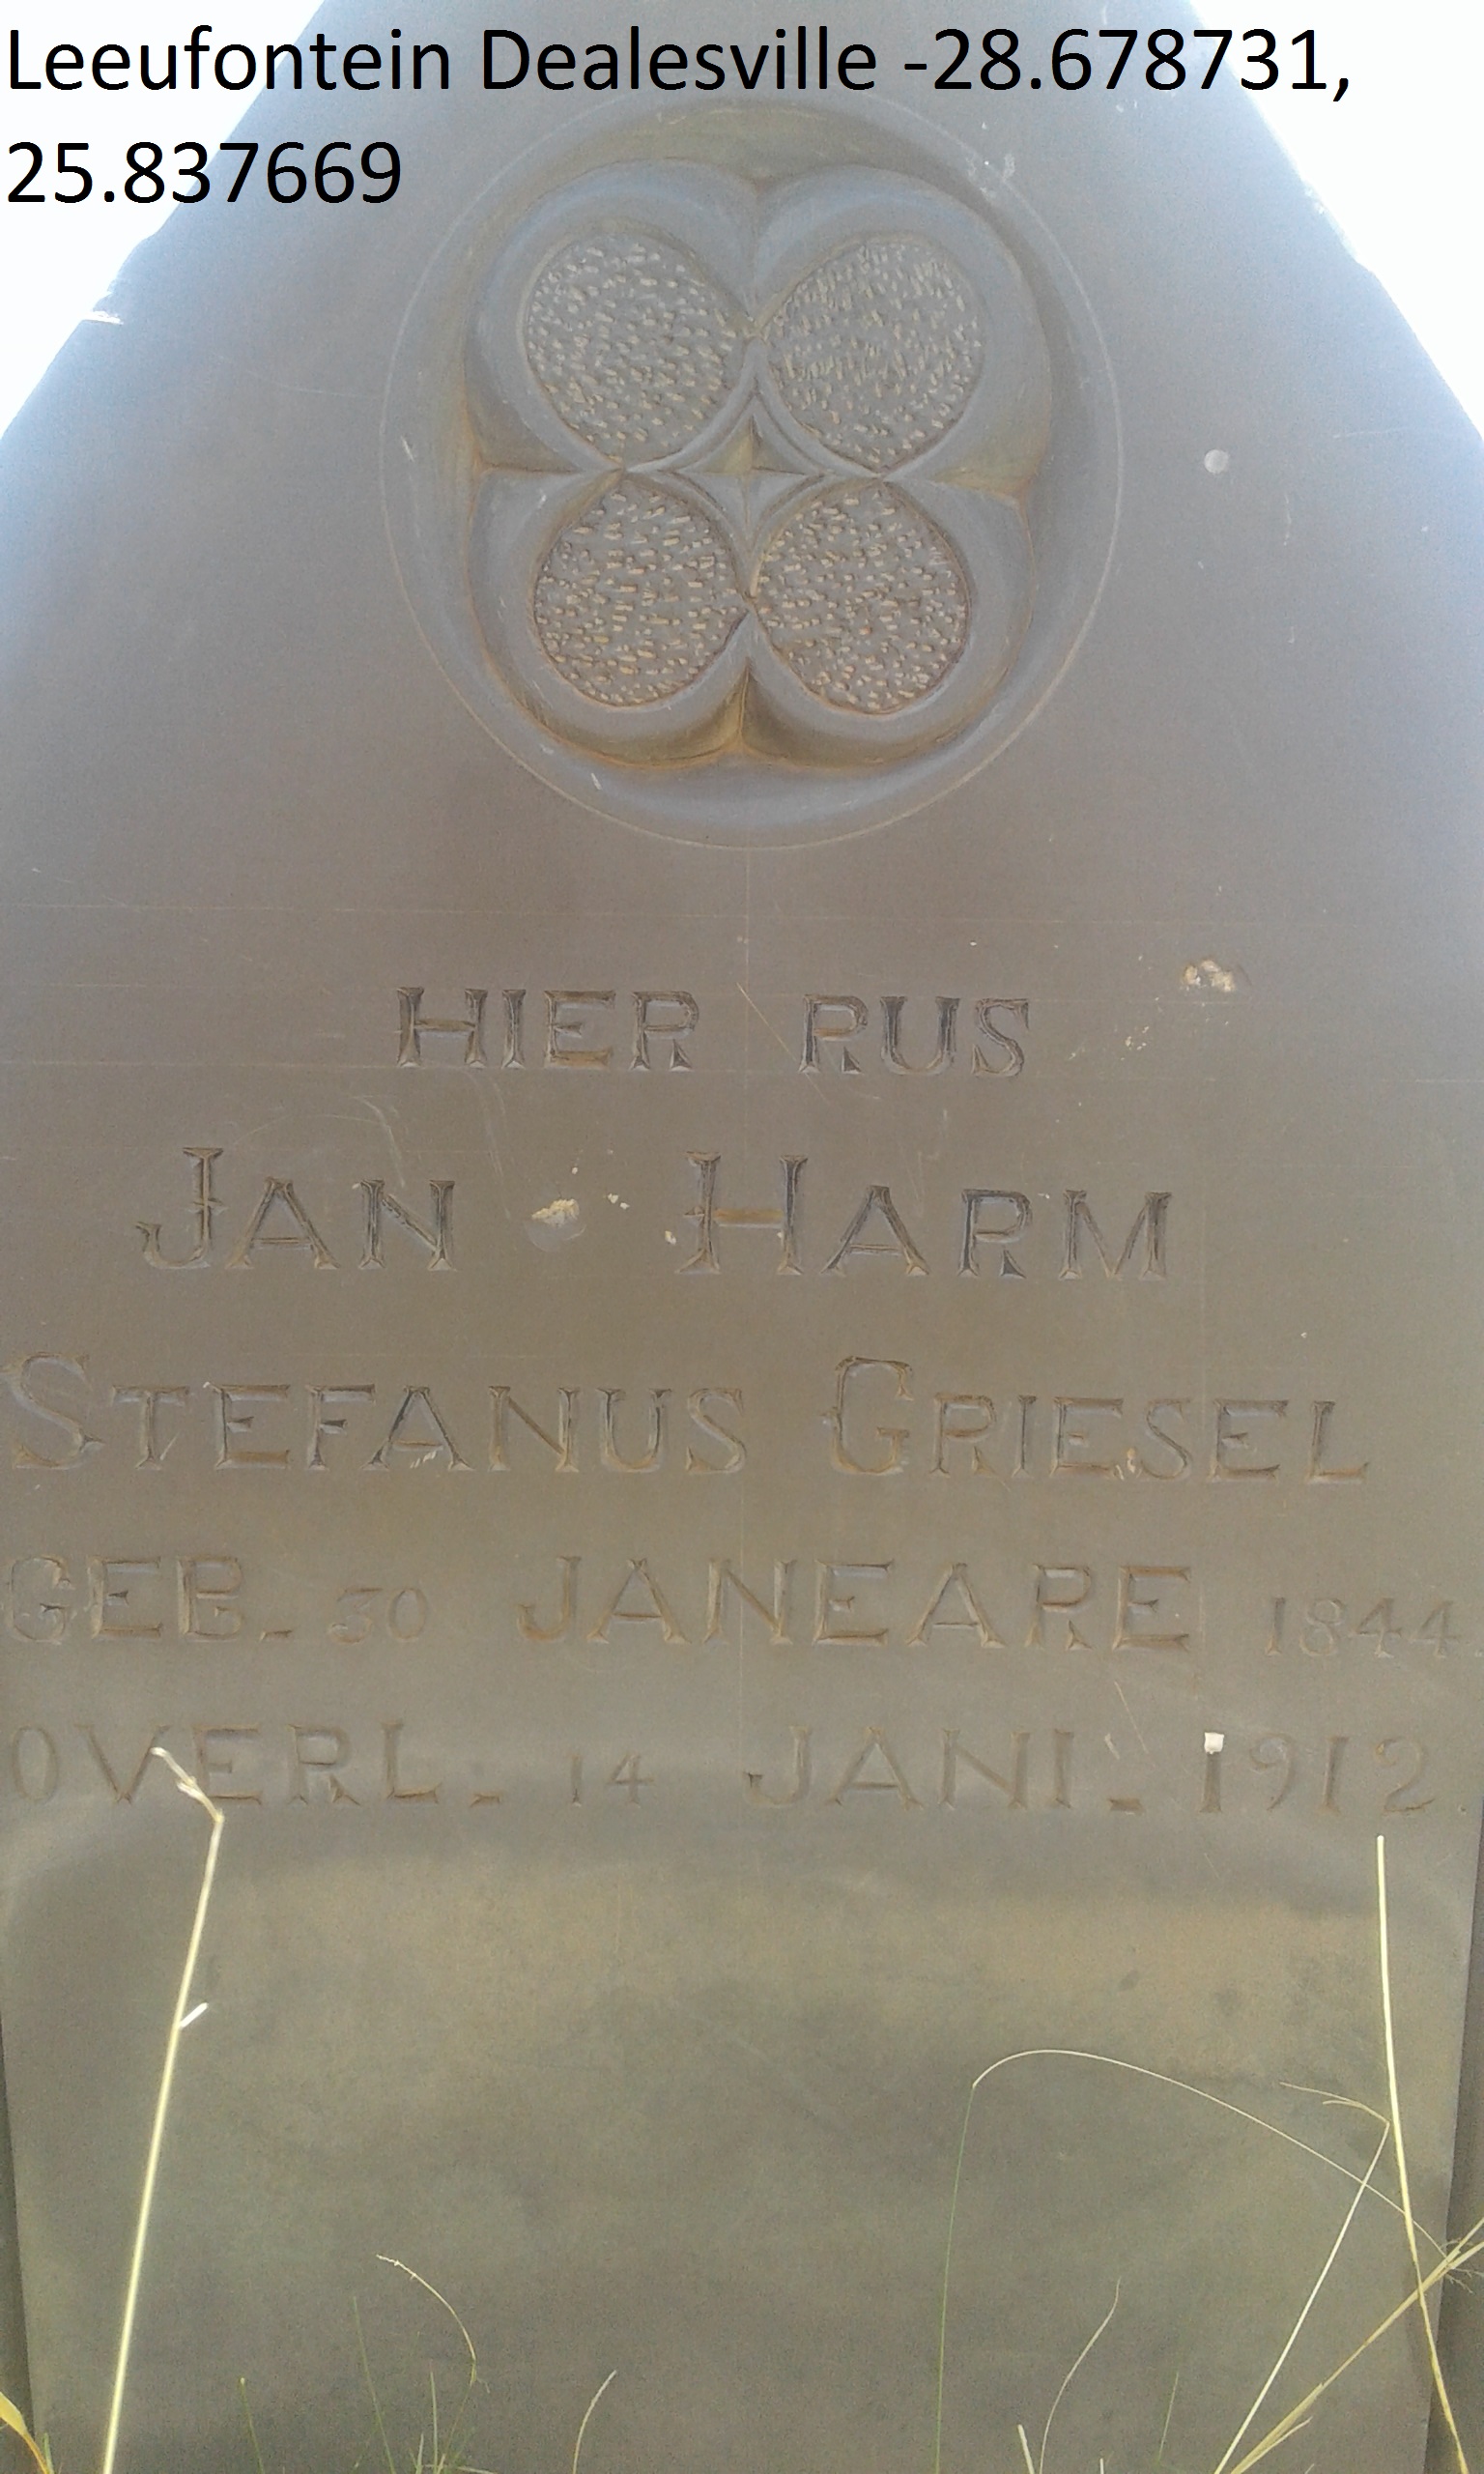 GRIESEL Jan Harm Stefanus 1844-1912